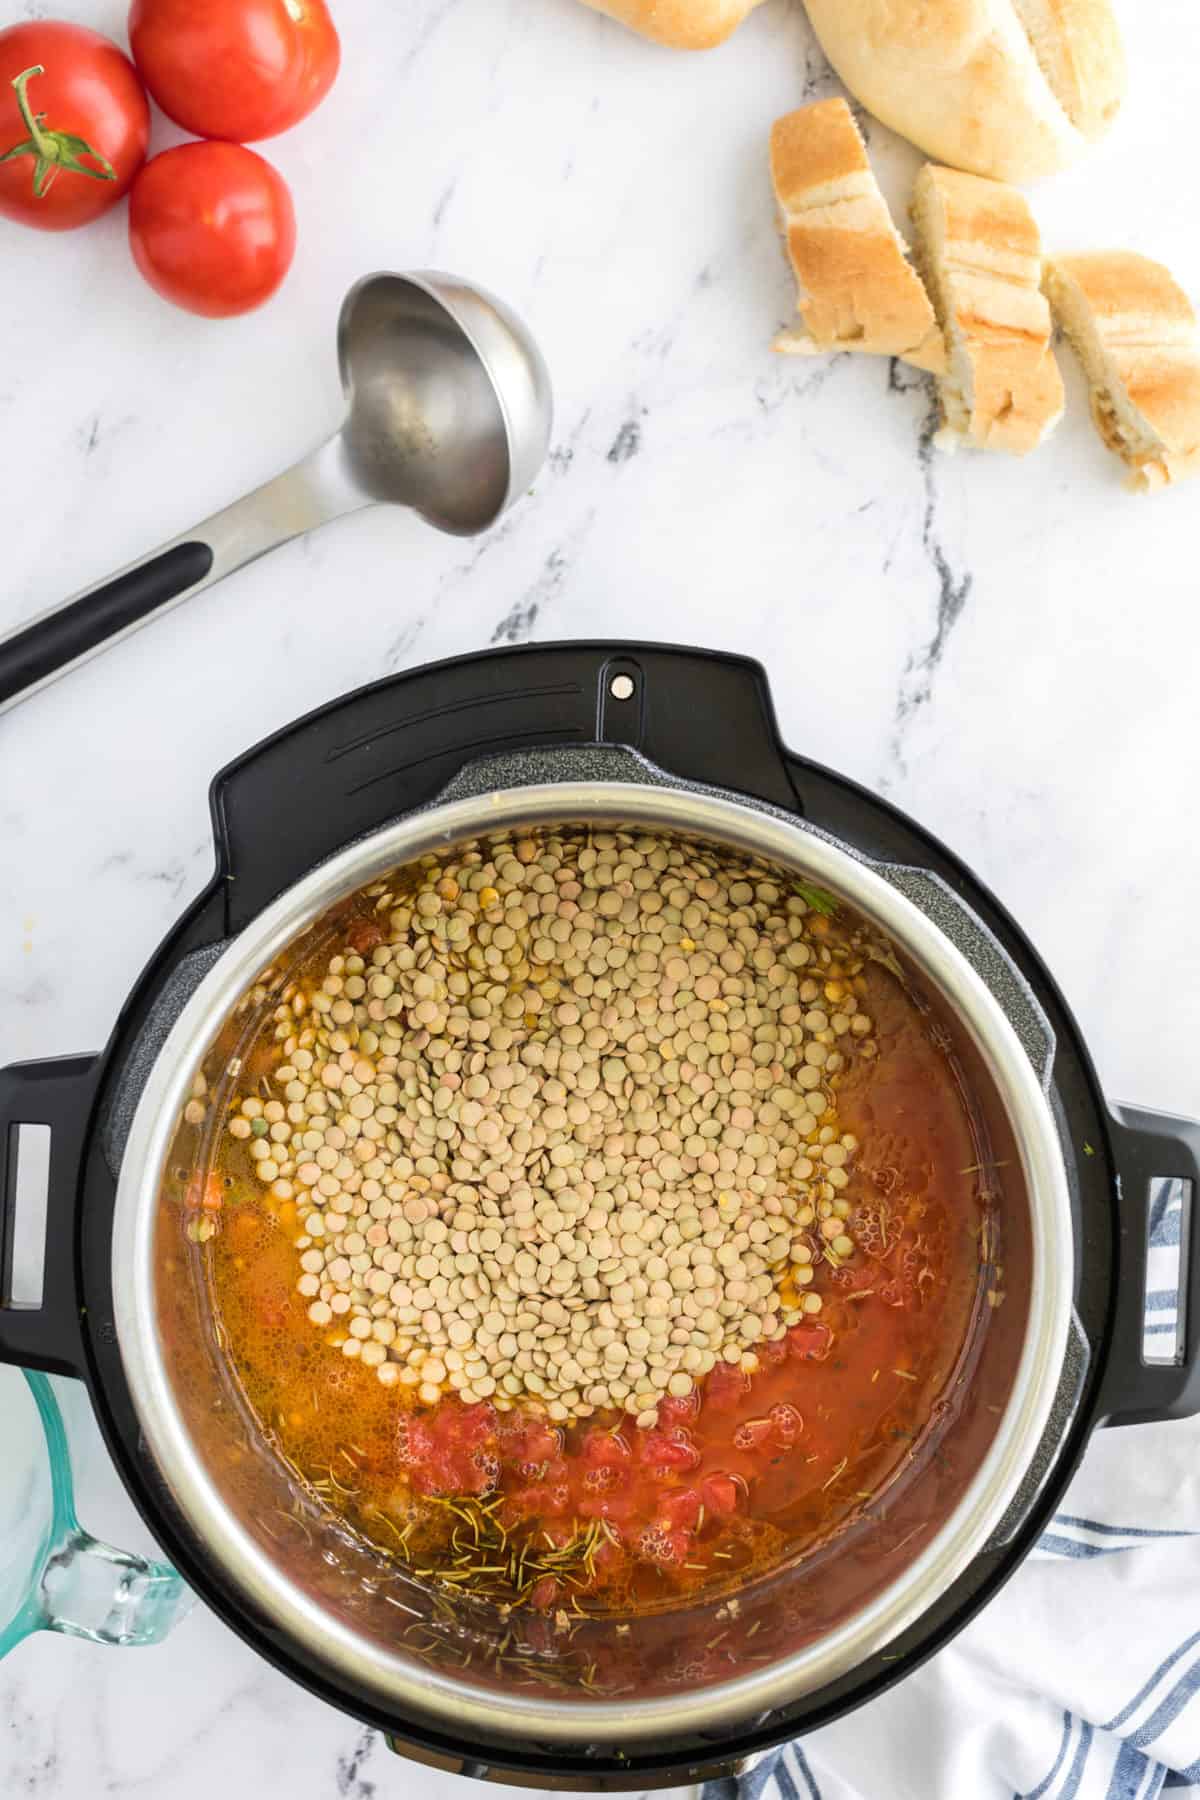 How To Make Instant Pot Copycat Carrabba’s Sausage Lentil Soup